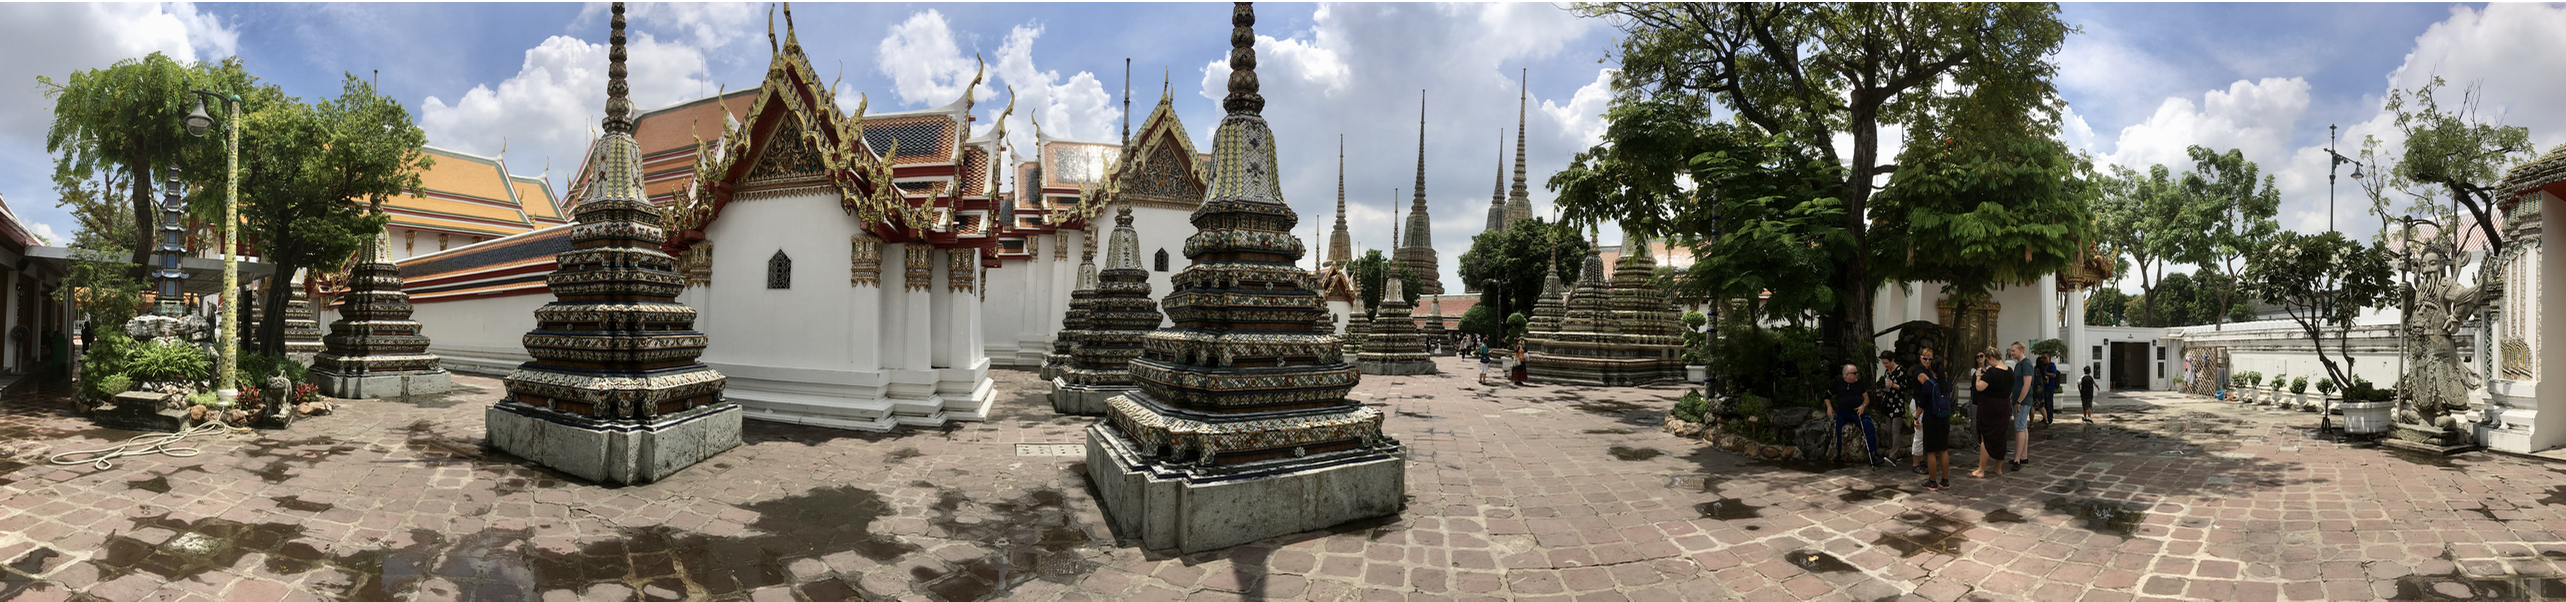 Buddha’s in Bangkok